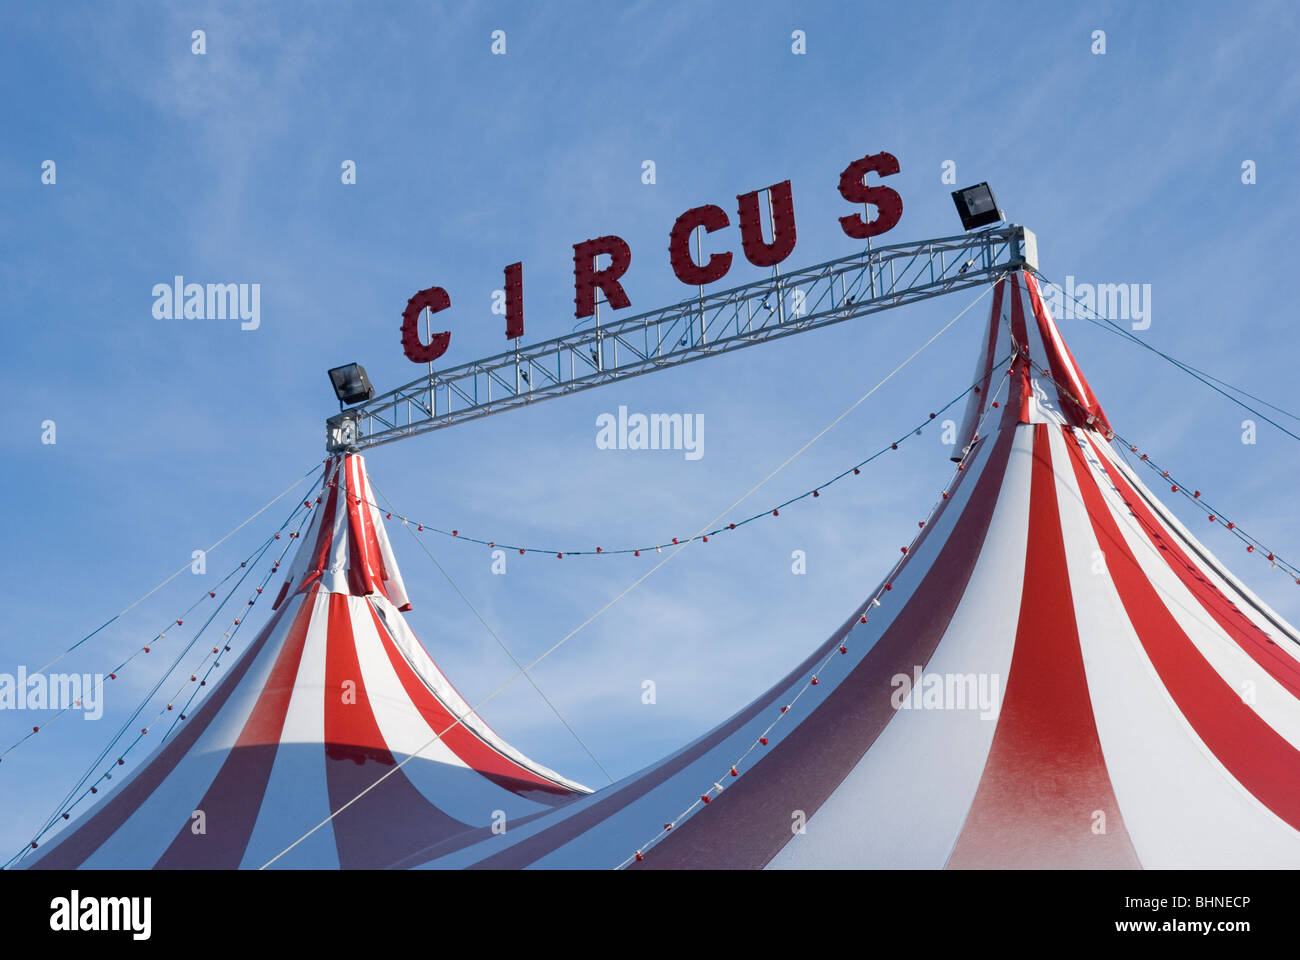 circus big top Stock Photo